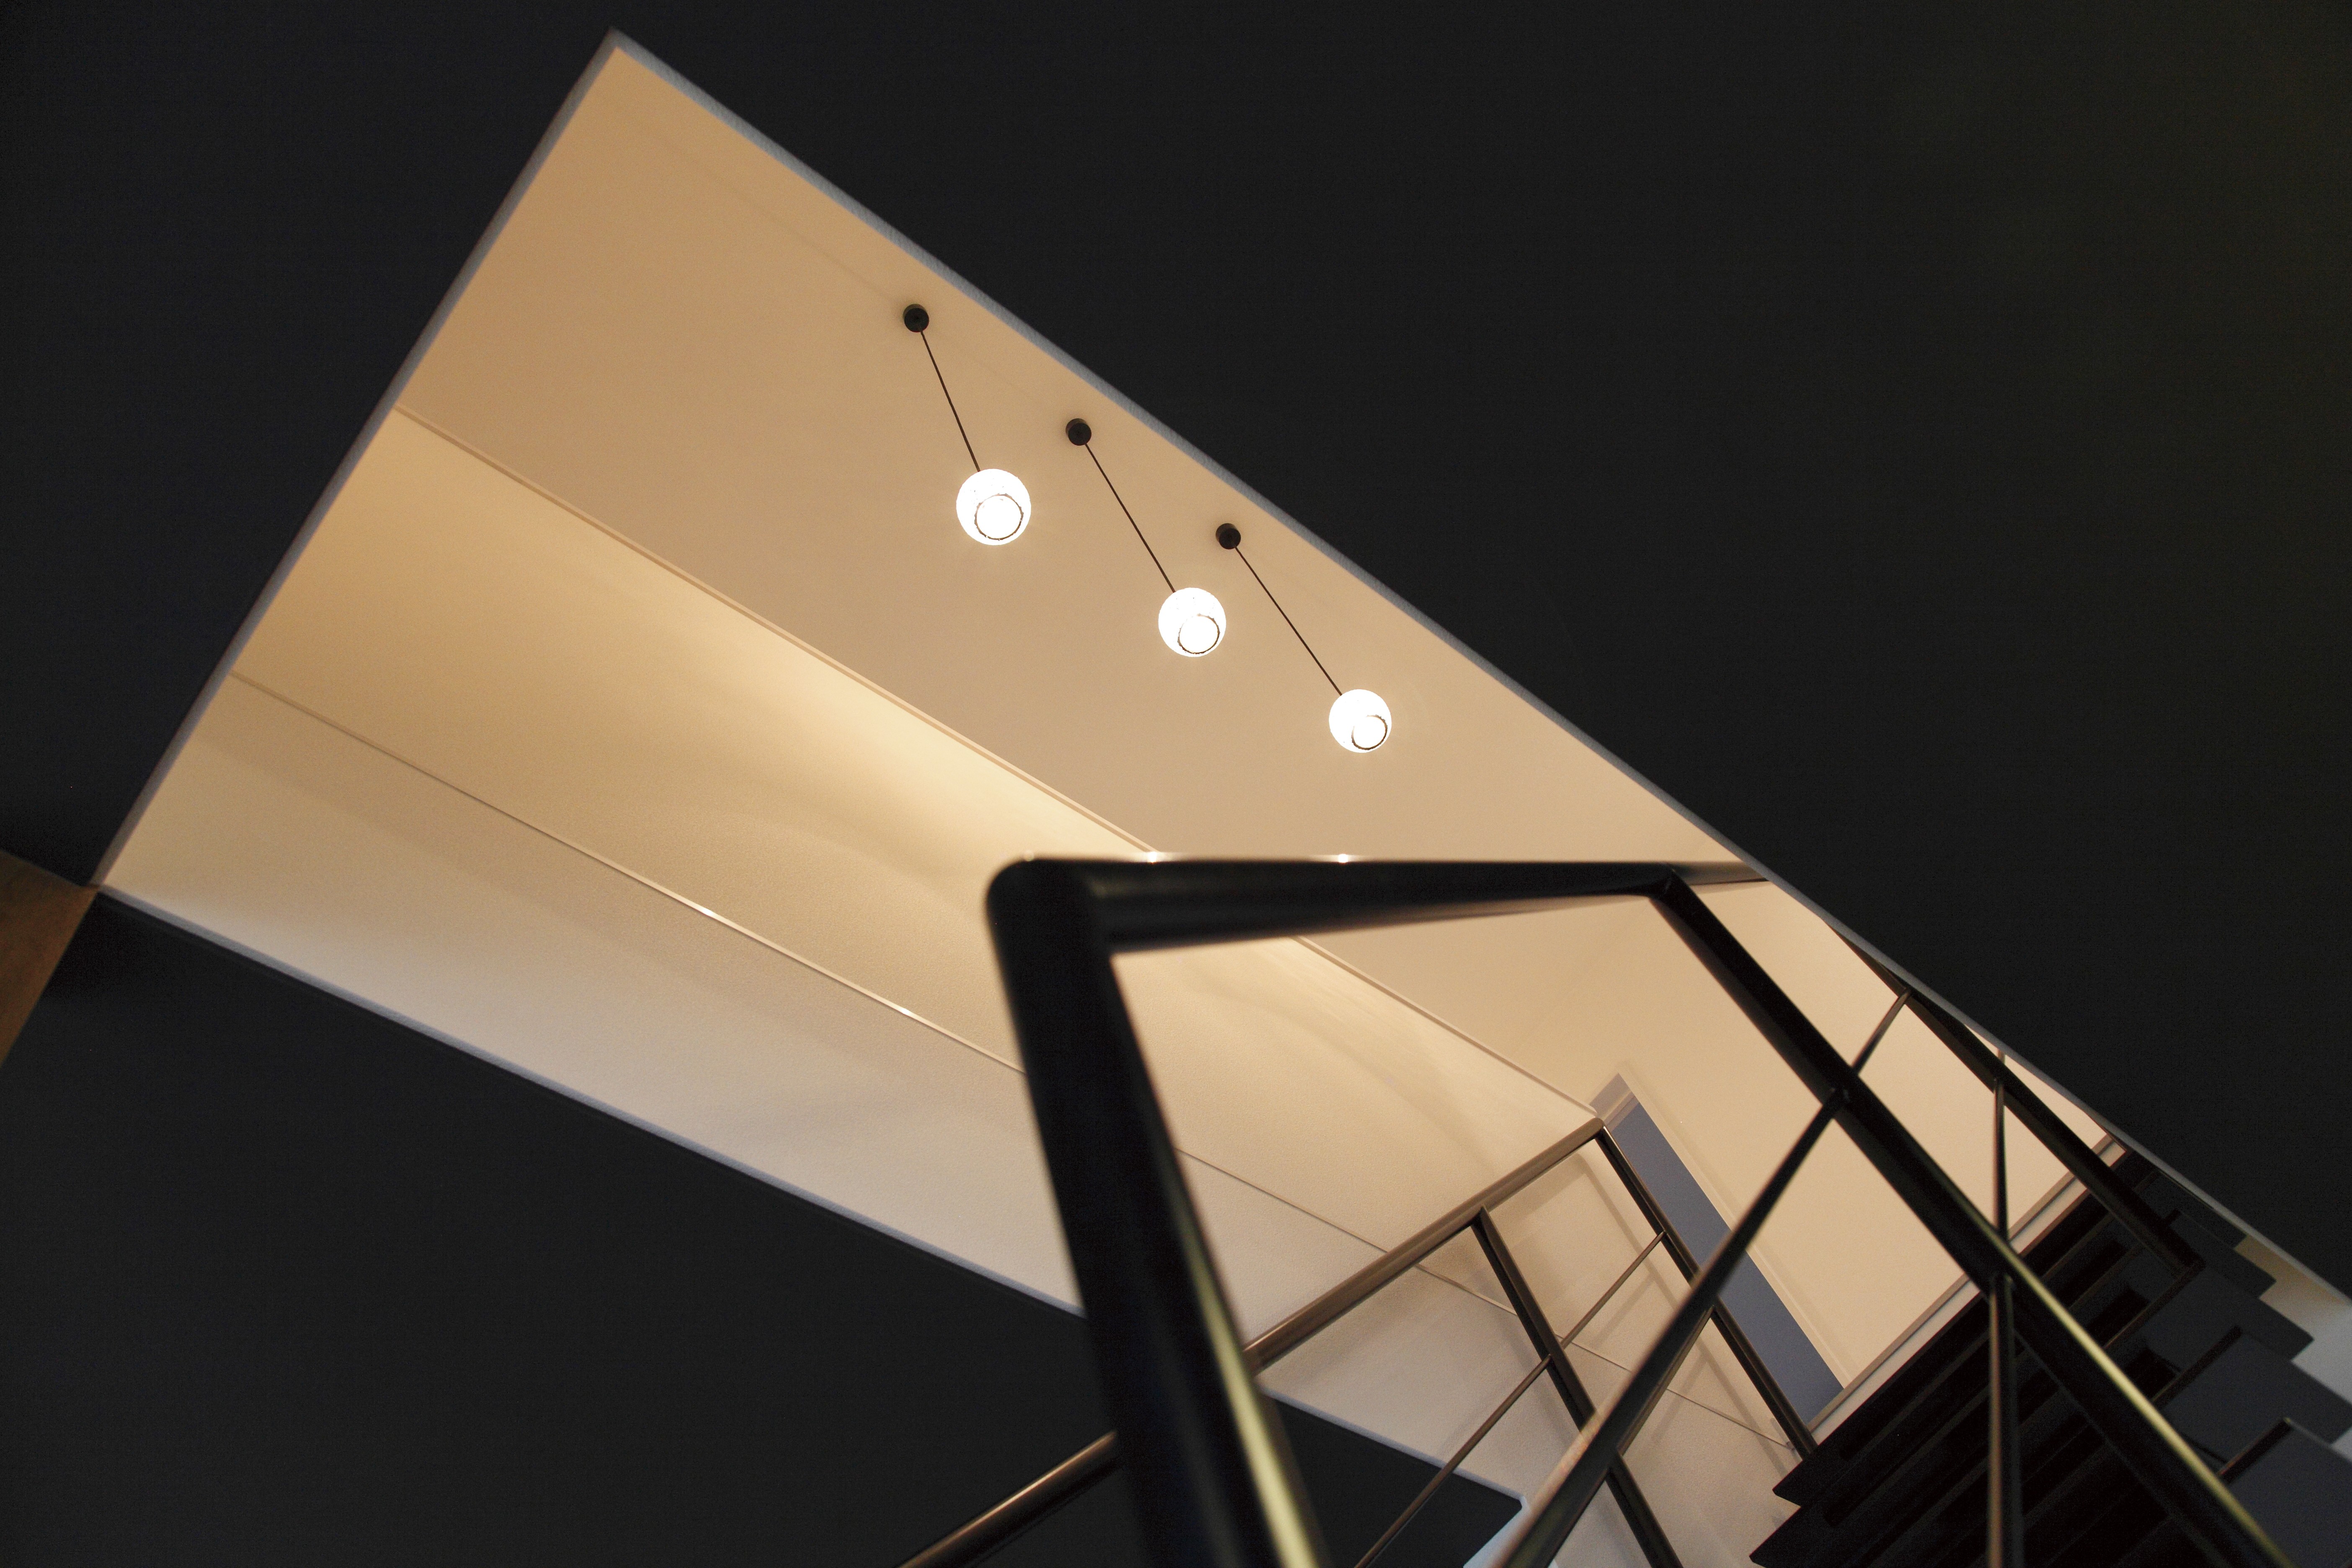 空間の中にぽっかりと浮かんだ白のスクエア。階段の吹き抜けと1階天井とのコントラストがアートな雰囲気を漂わせる。ドラマチックな効果をねらってみるのも面白い